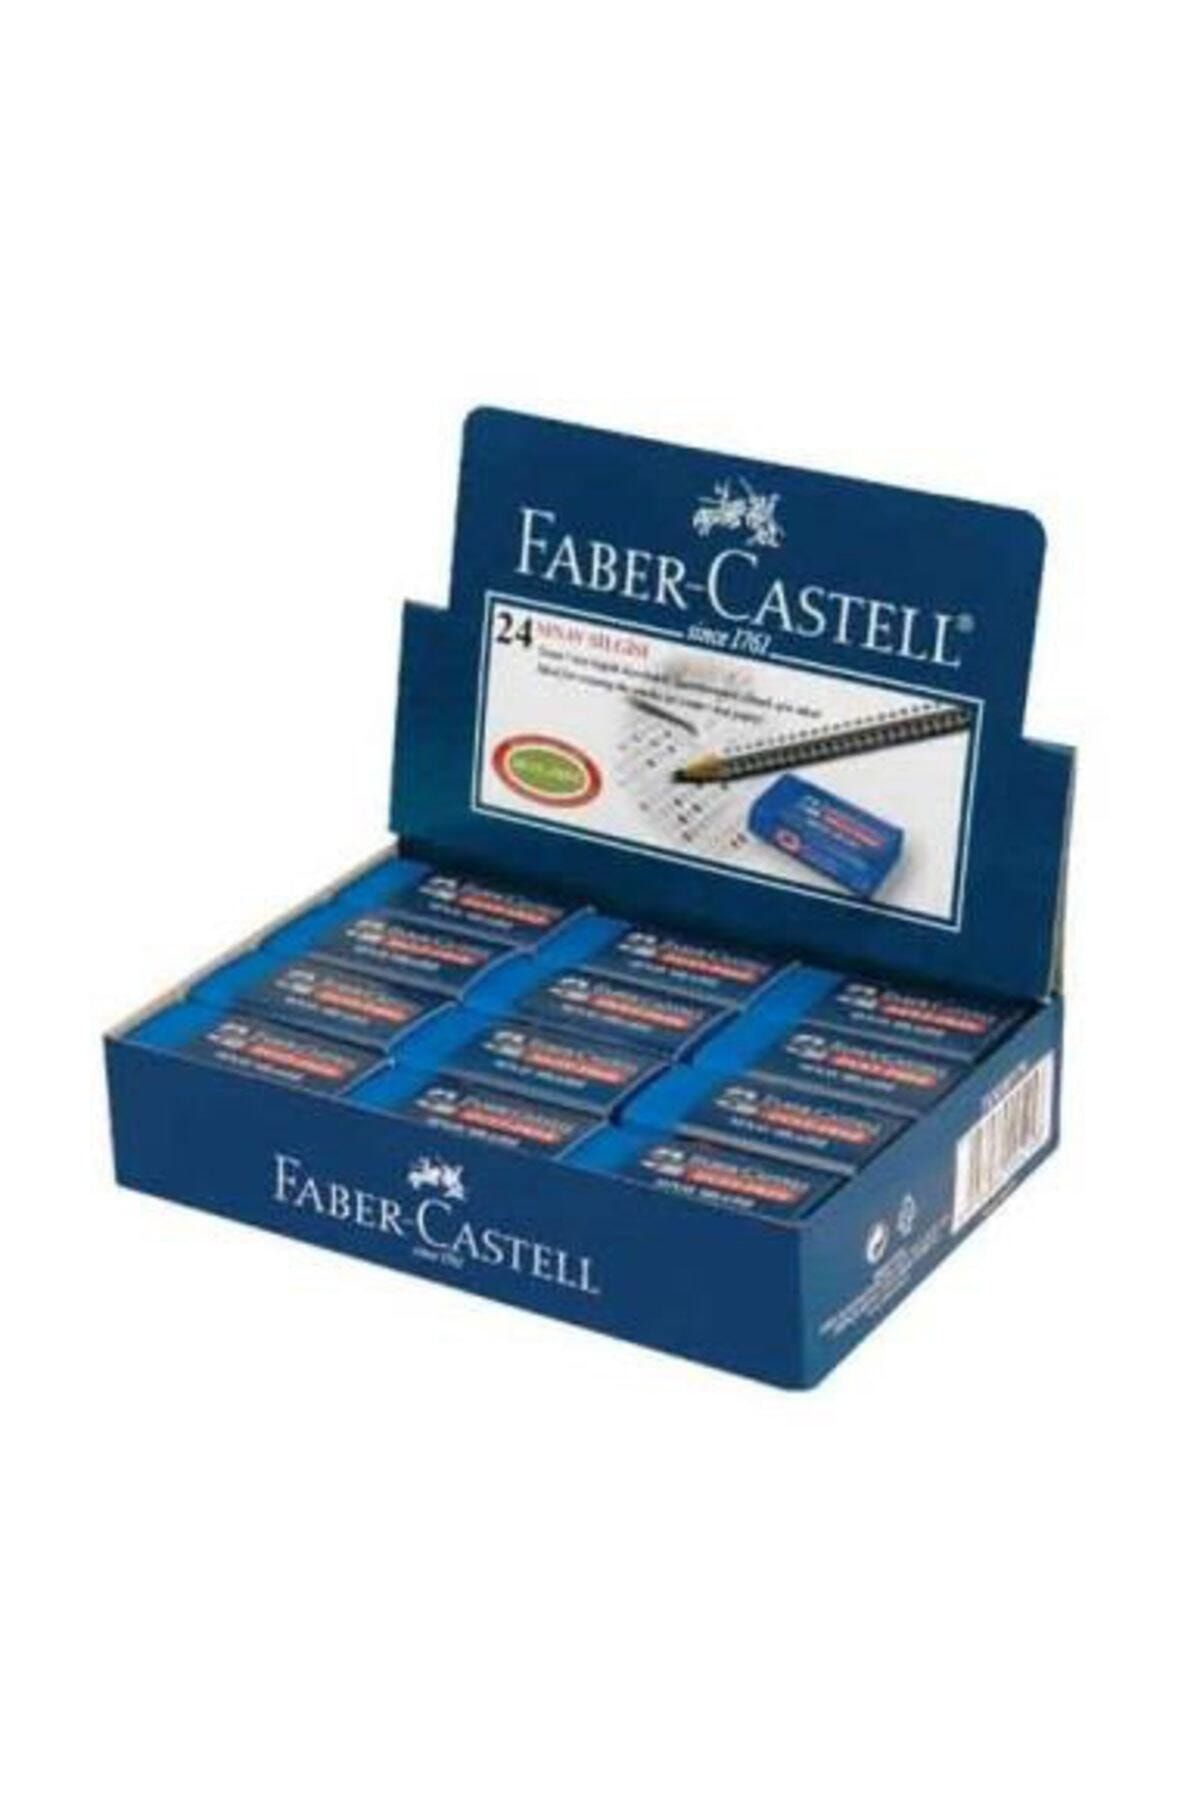 Faber Castell Faber-castell Sınav Silgisi 30 Lu 18 71 36 (1 Paket 30 Adet)